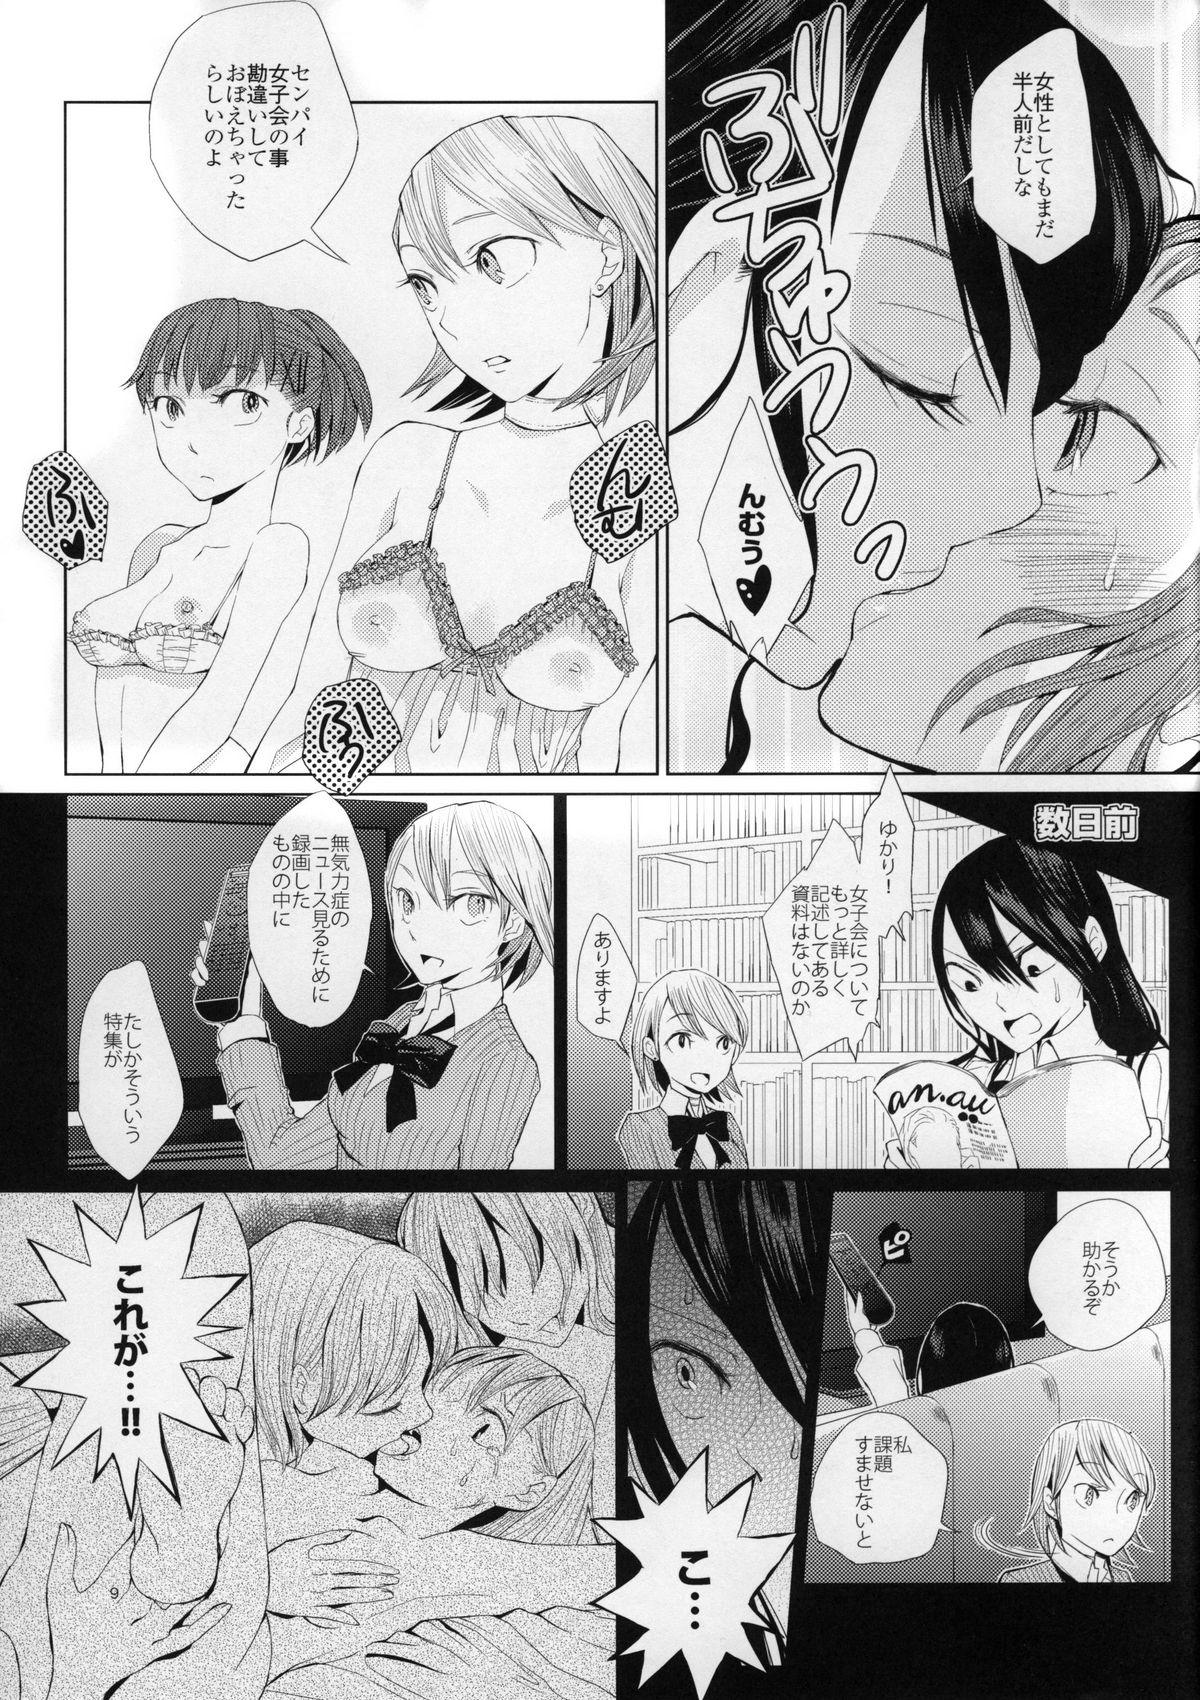 Punheta YURI SONA 2 Yoru no Joou - Midnight Queen - Persona 3 Adult - Page 8